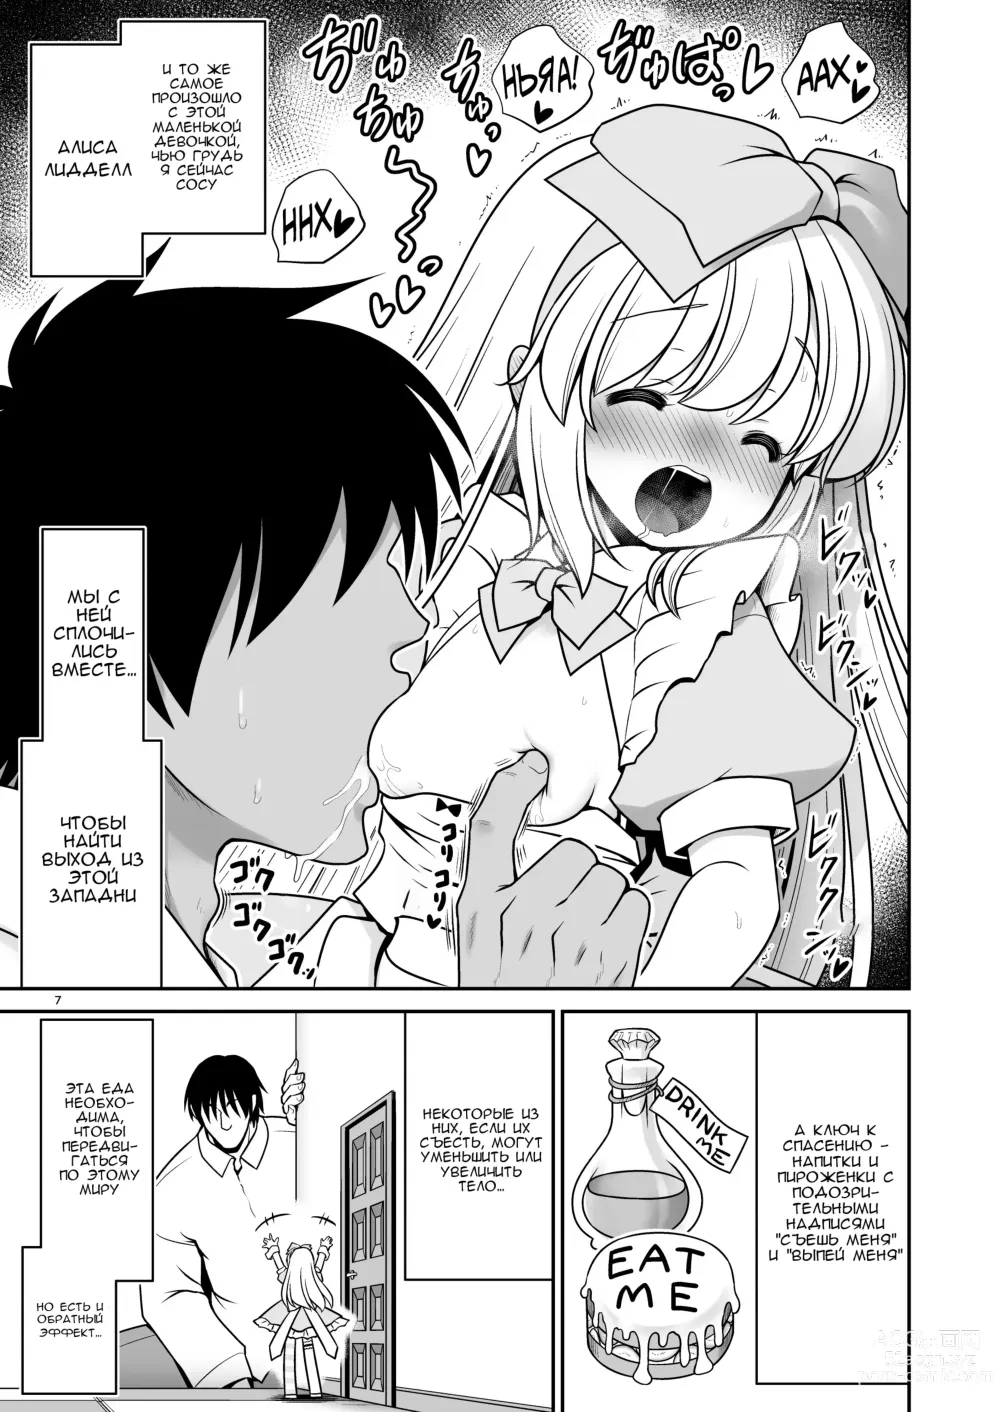 Page 7 of doujinshi Безнадёжная алиса, которая настолько подсела на сексуальное лечение, что без разбора ела все ядовитые пироженки